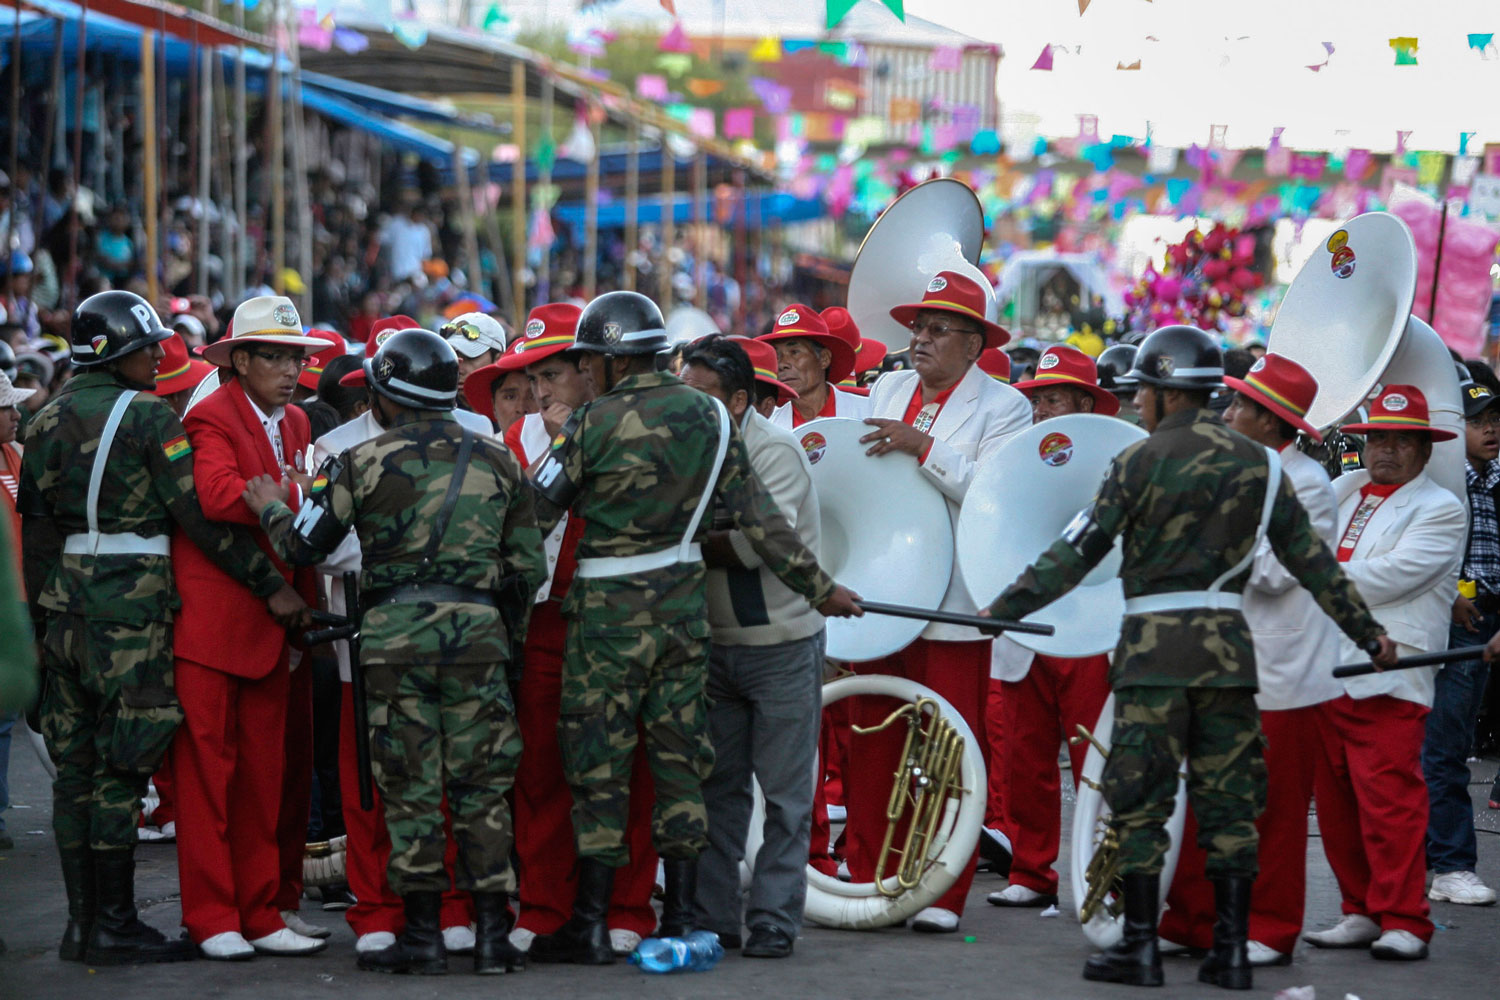 El desplome de una pasarela en el desfile del carnaval boliviano causa 4 muertos y 60 heridos